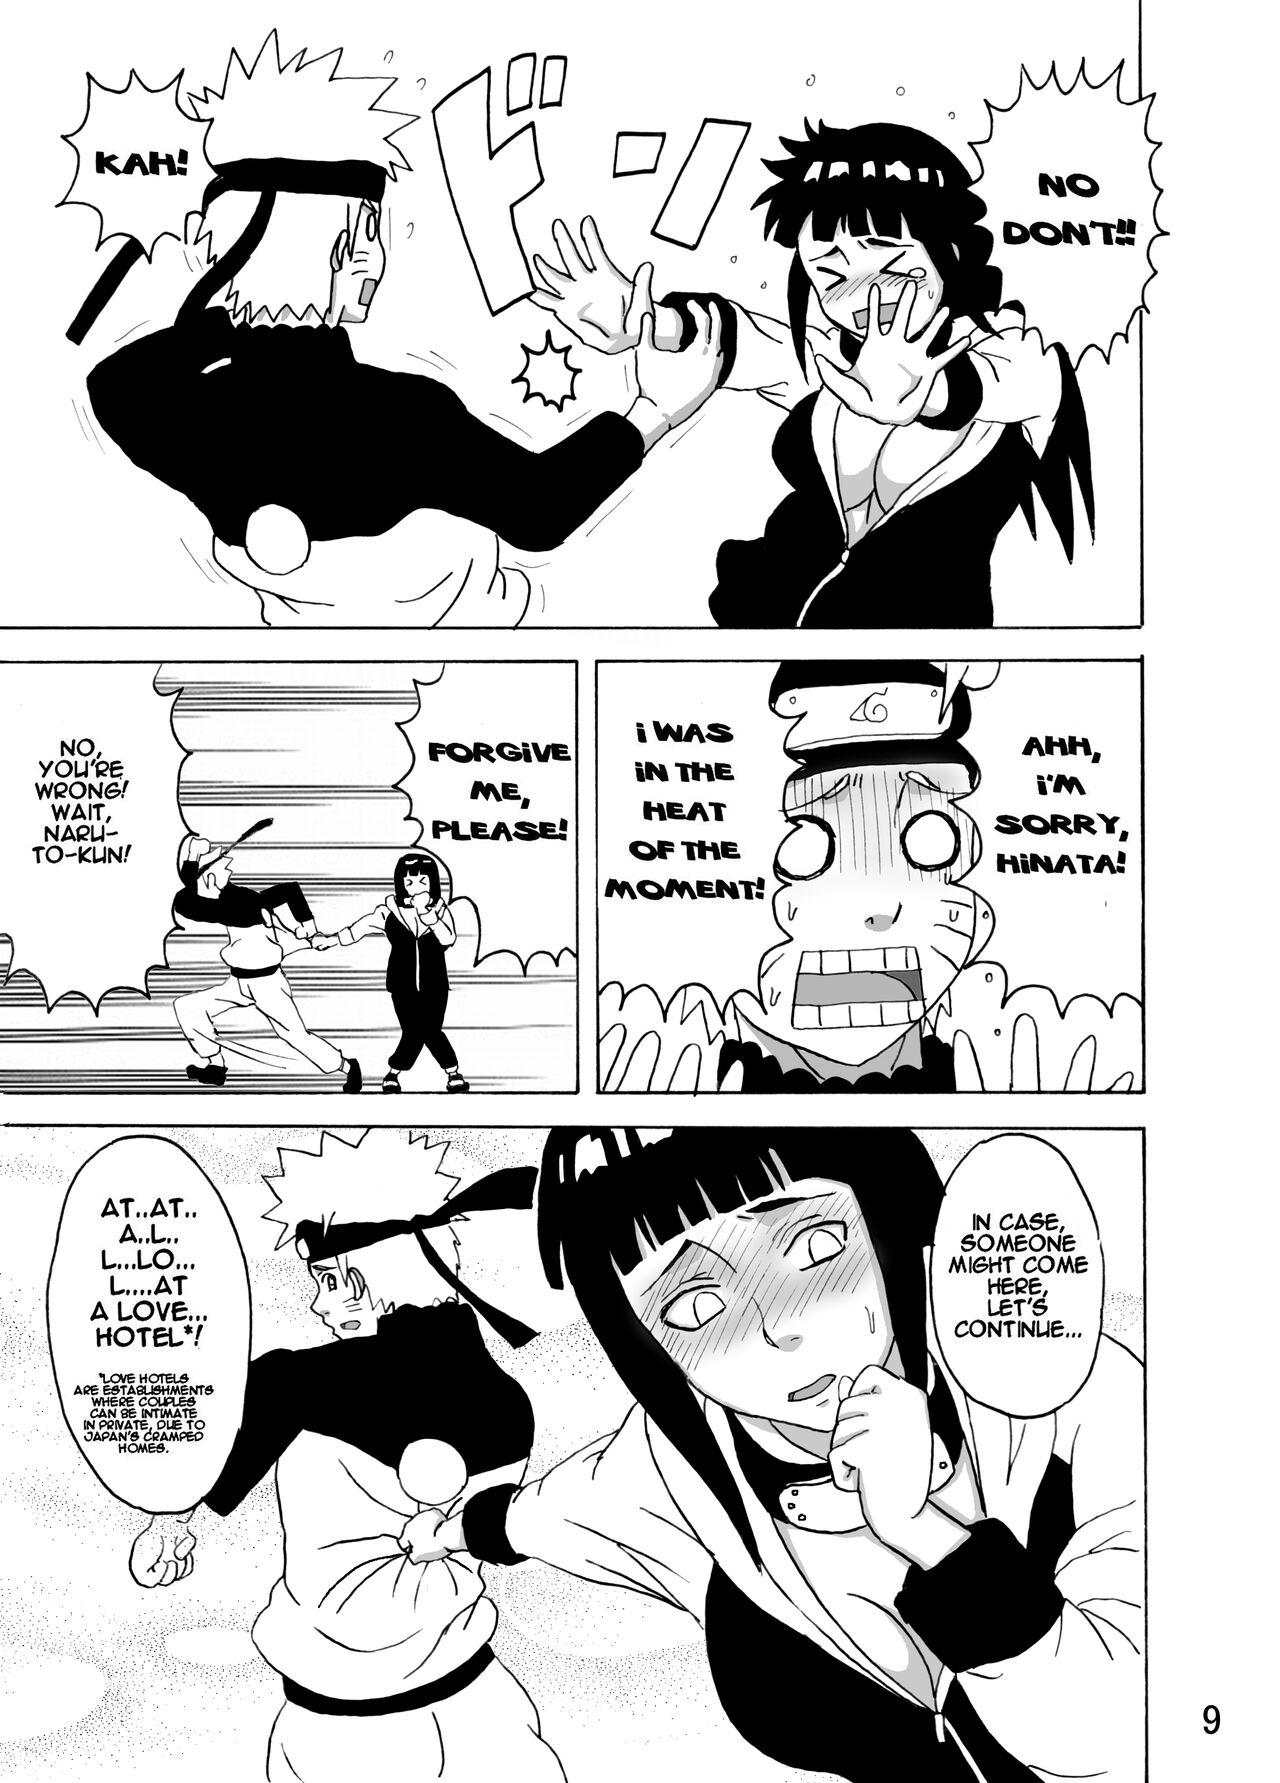 Doggystyle Porn Hinata Ganbaru! | Hinata Fight! - Naruto Big Dicks - Page 10